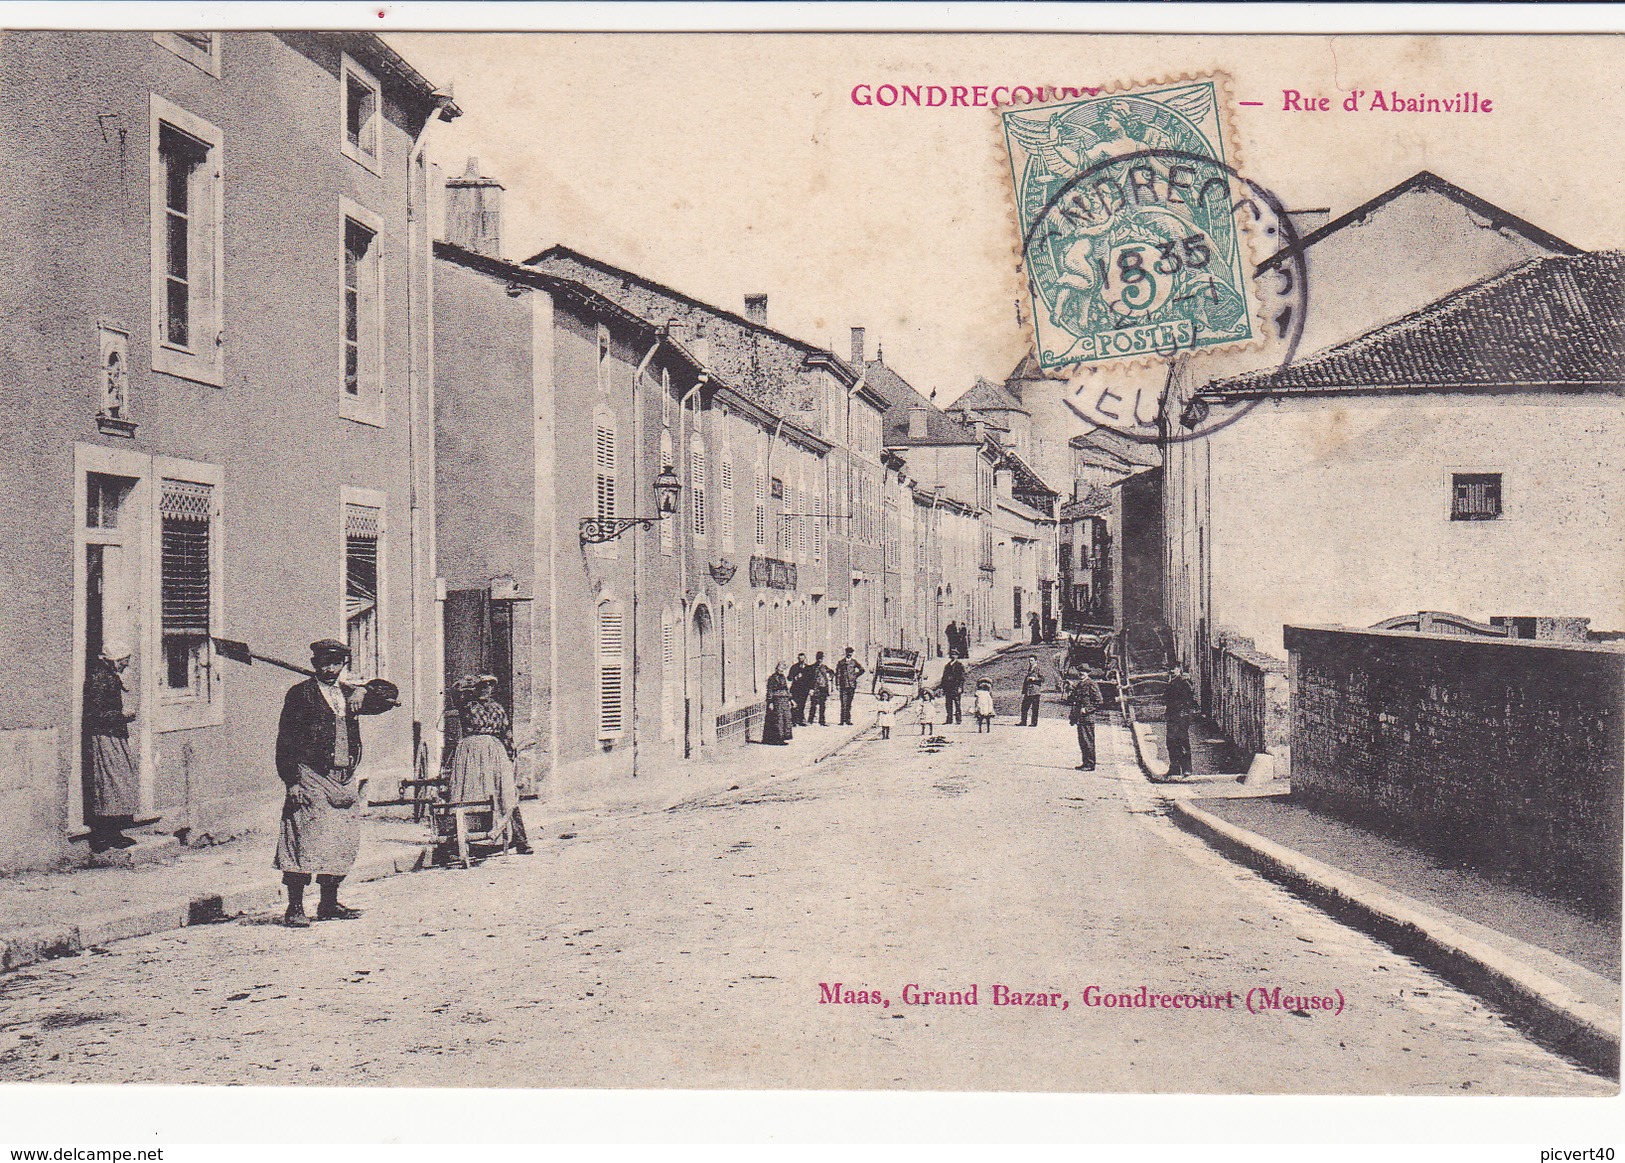 Gondrecourt,rue D Abainville - Gondrecourt Le Chateau